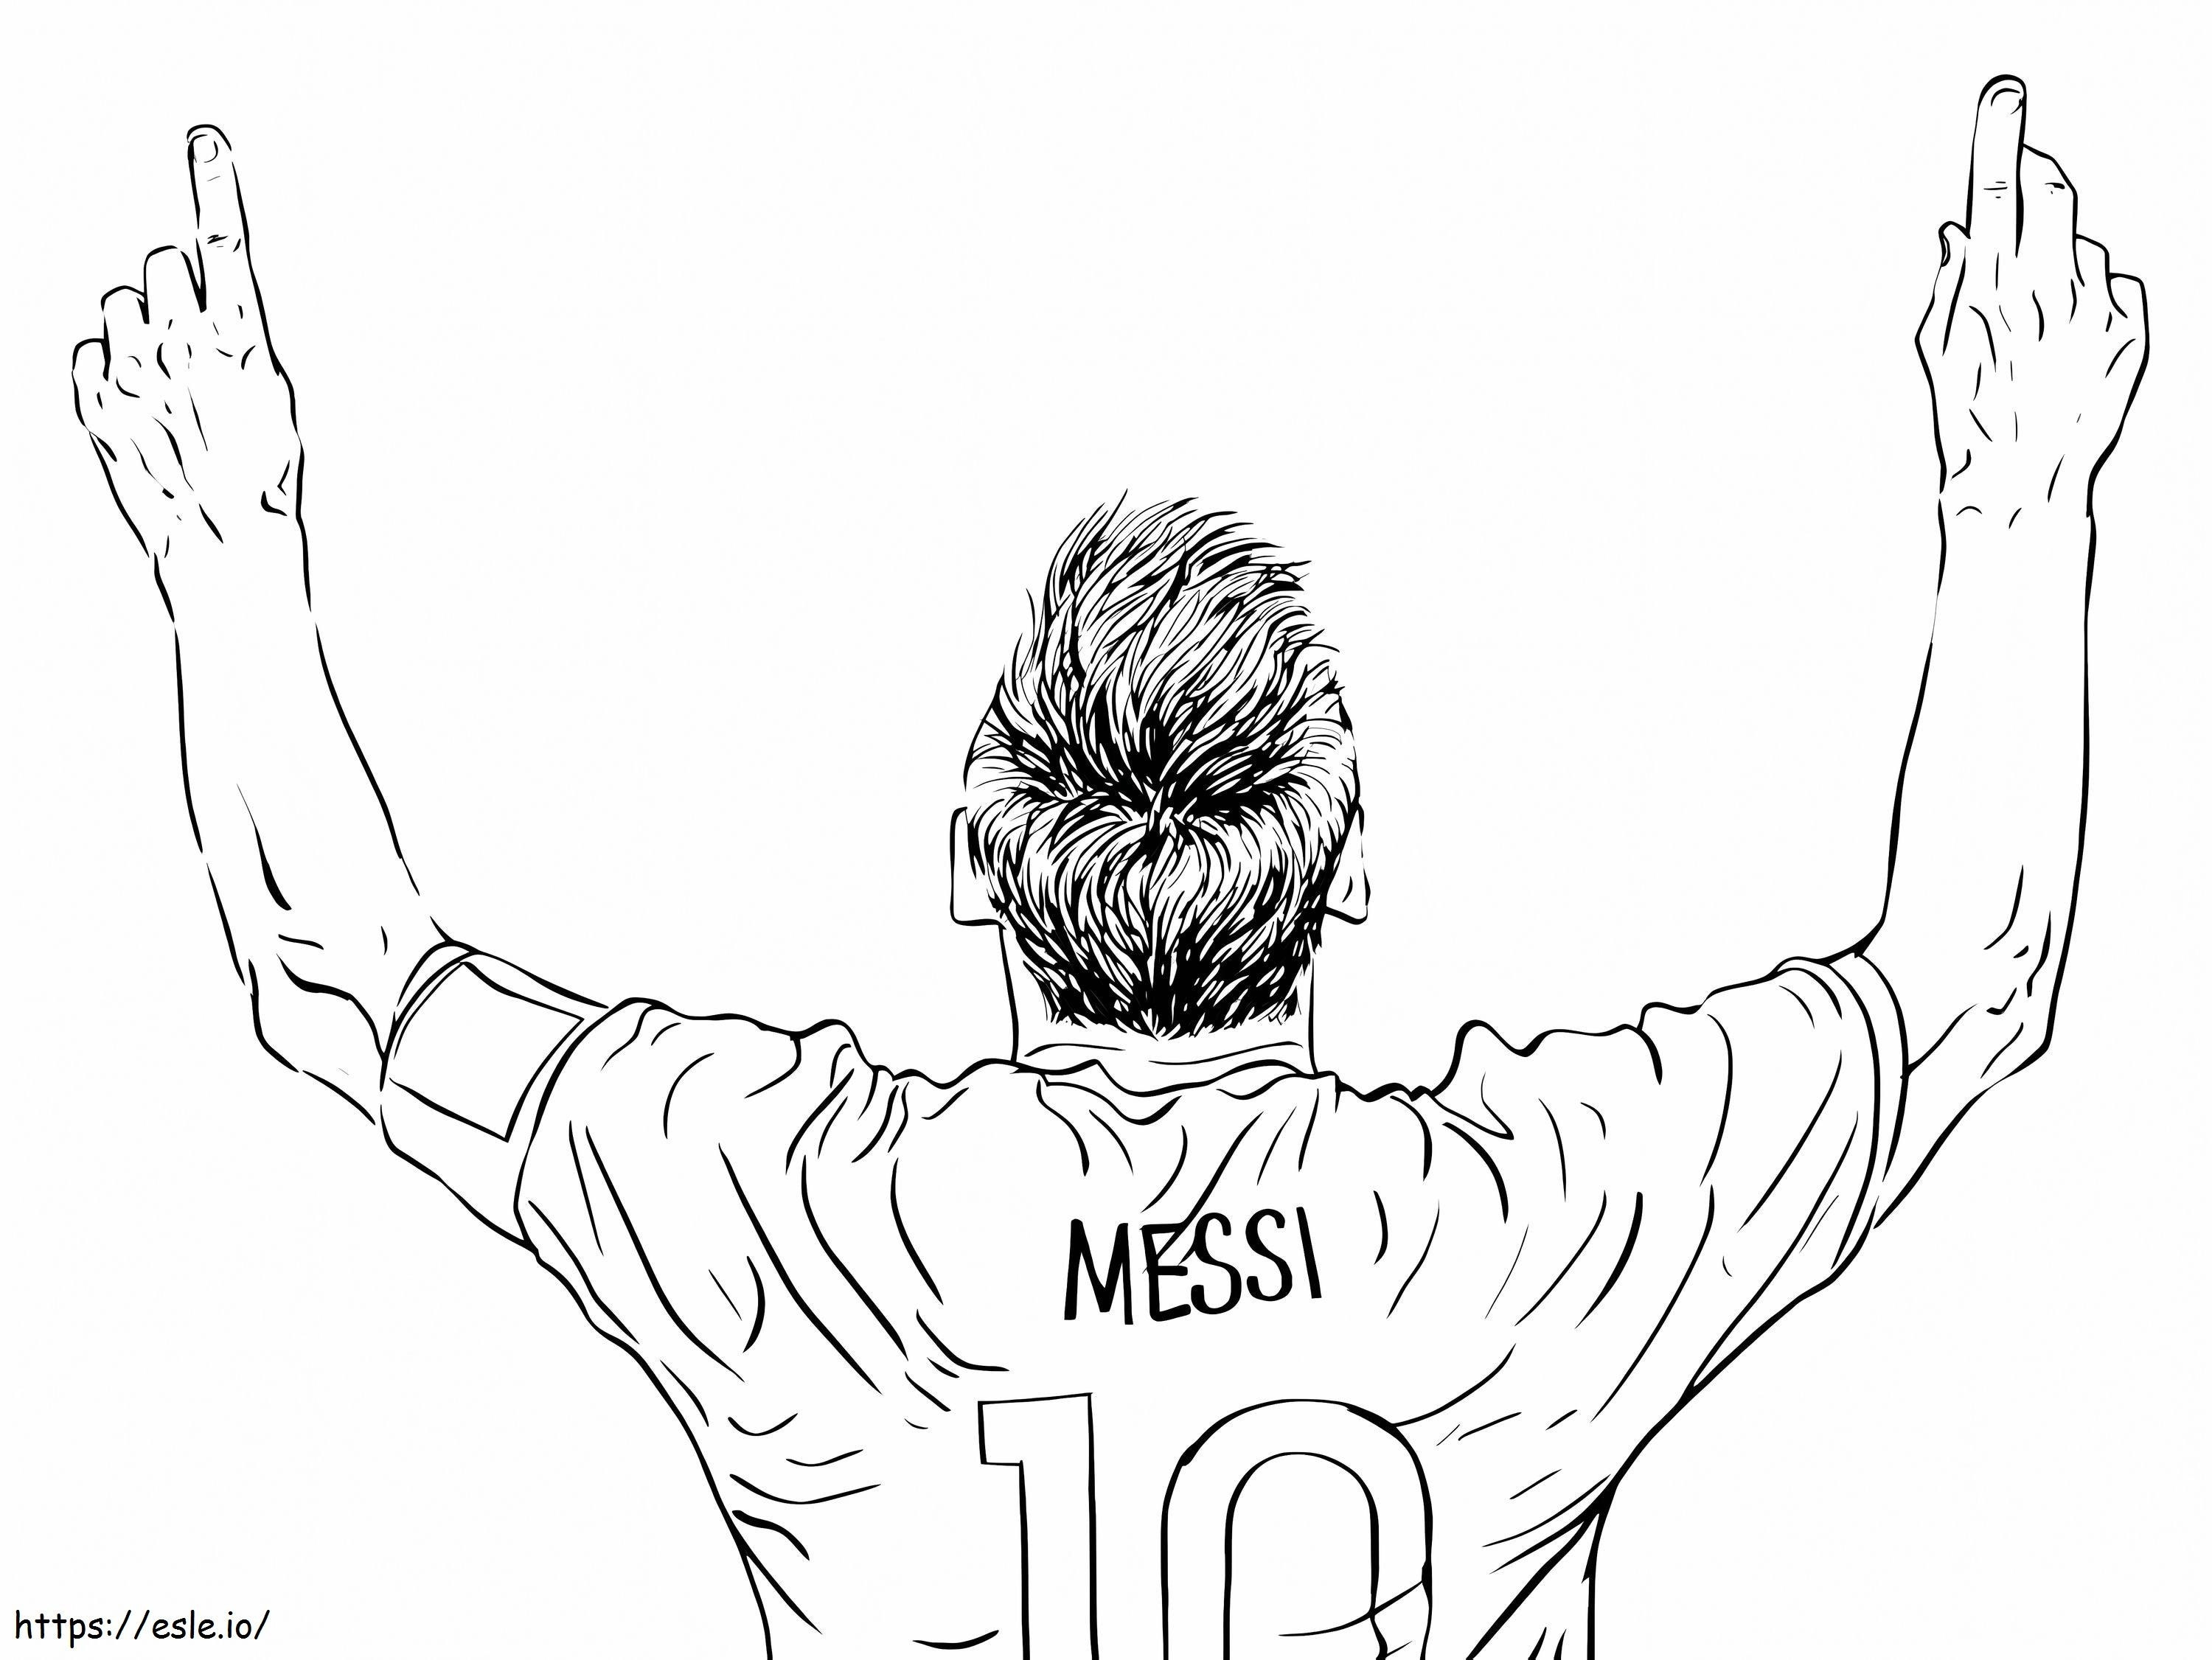 Temel Lionel Messi boyama